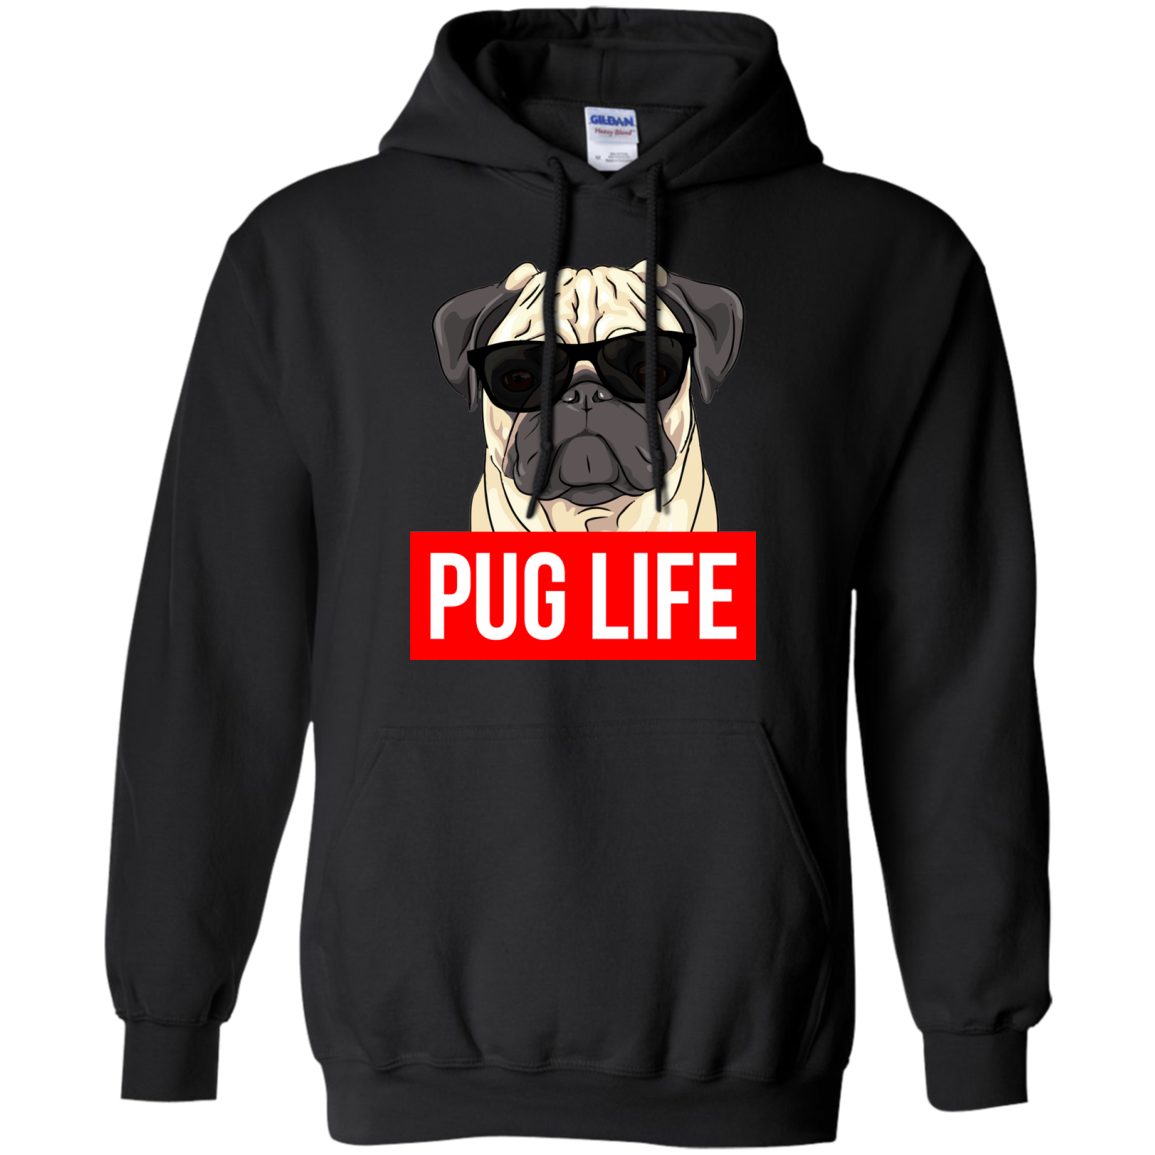 Pug Life - Pug Dog Lovers Shirt